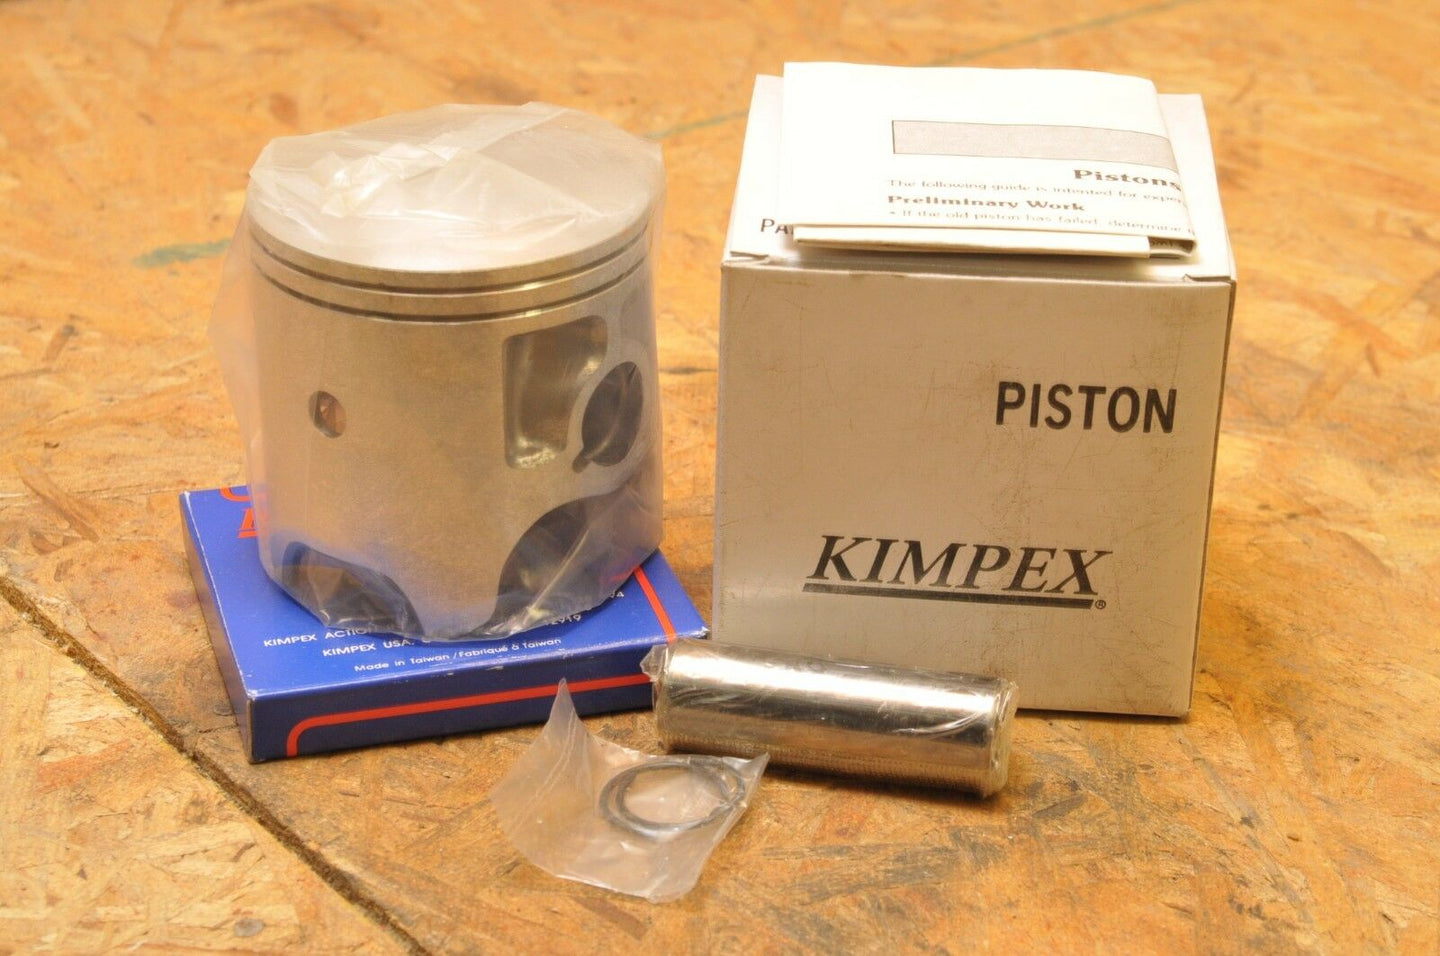 NEW NOS KIMPEX PISTON KIT 09-750 SKI-DOO 340 BLIZZARD 6500 7500 1978 1980